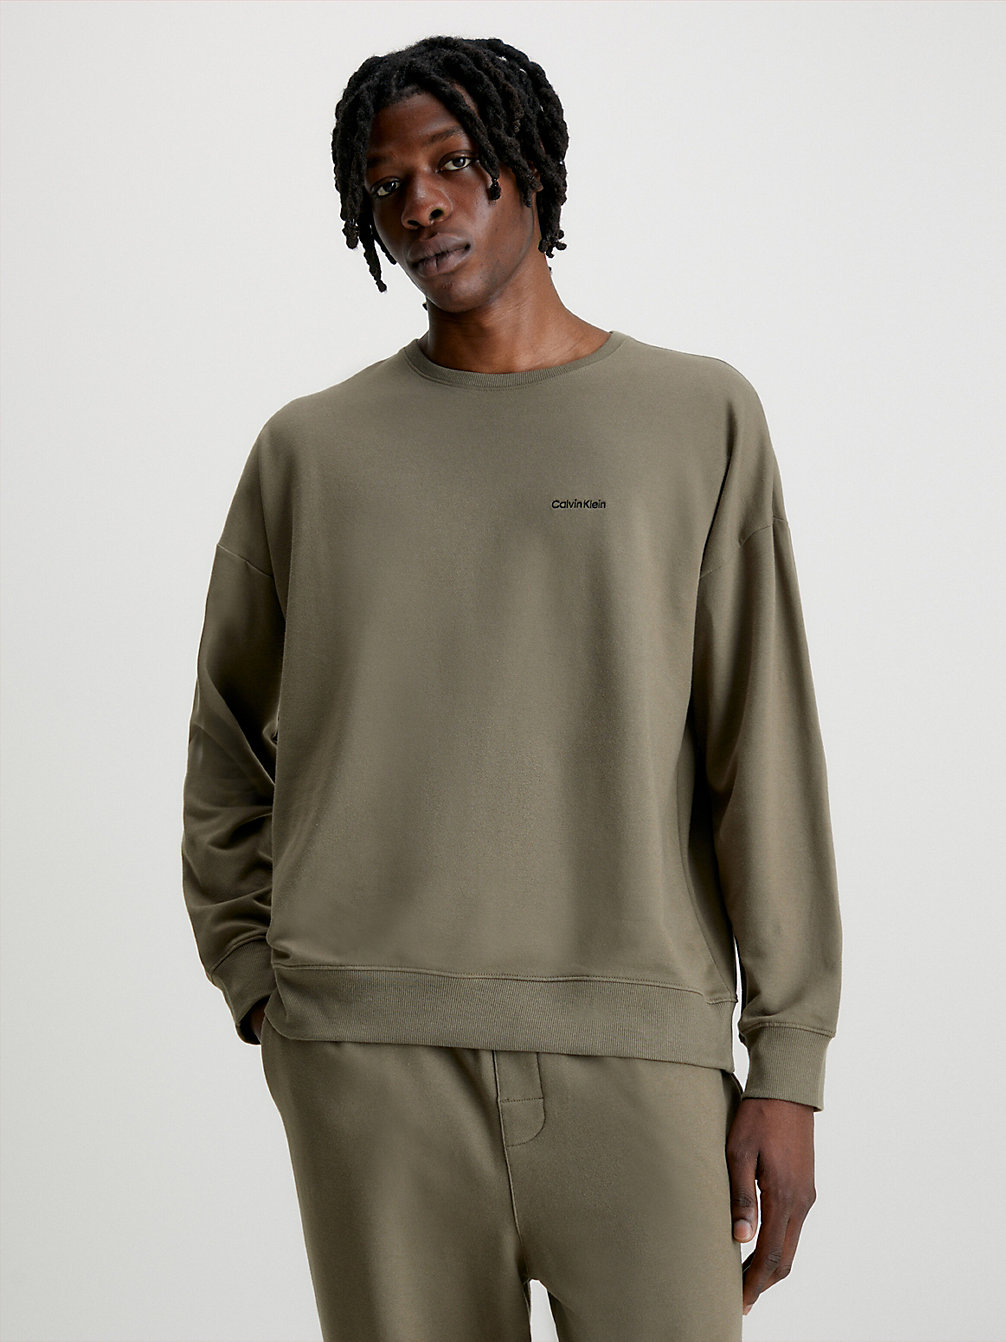 GRAY OLIVE Lounge Sweatshirt - Modern Cotton undefined men Calvin Klein